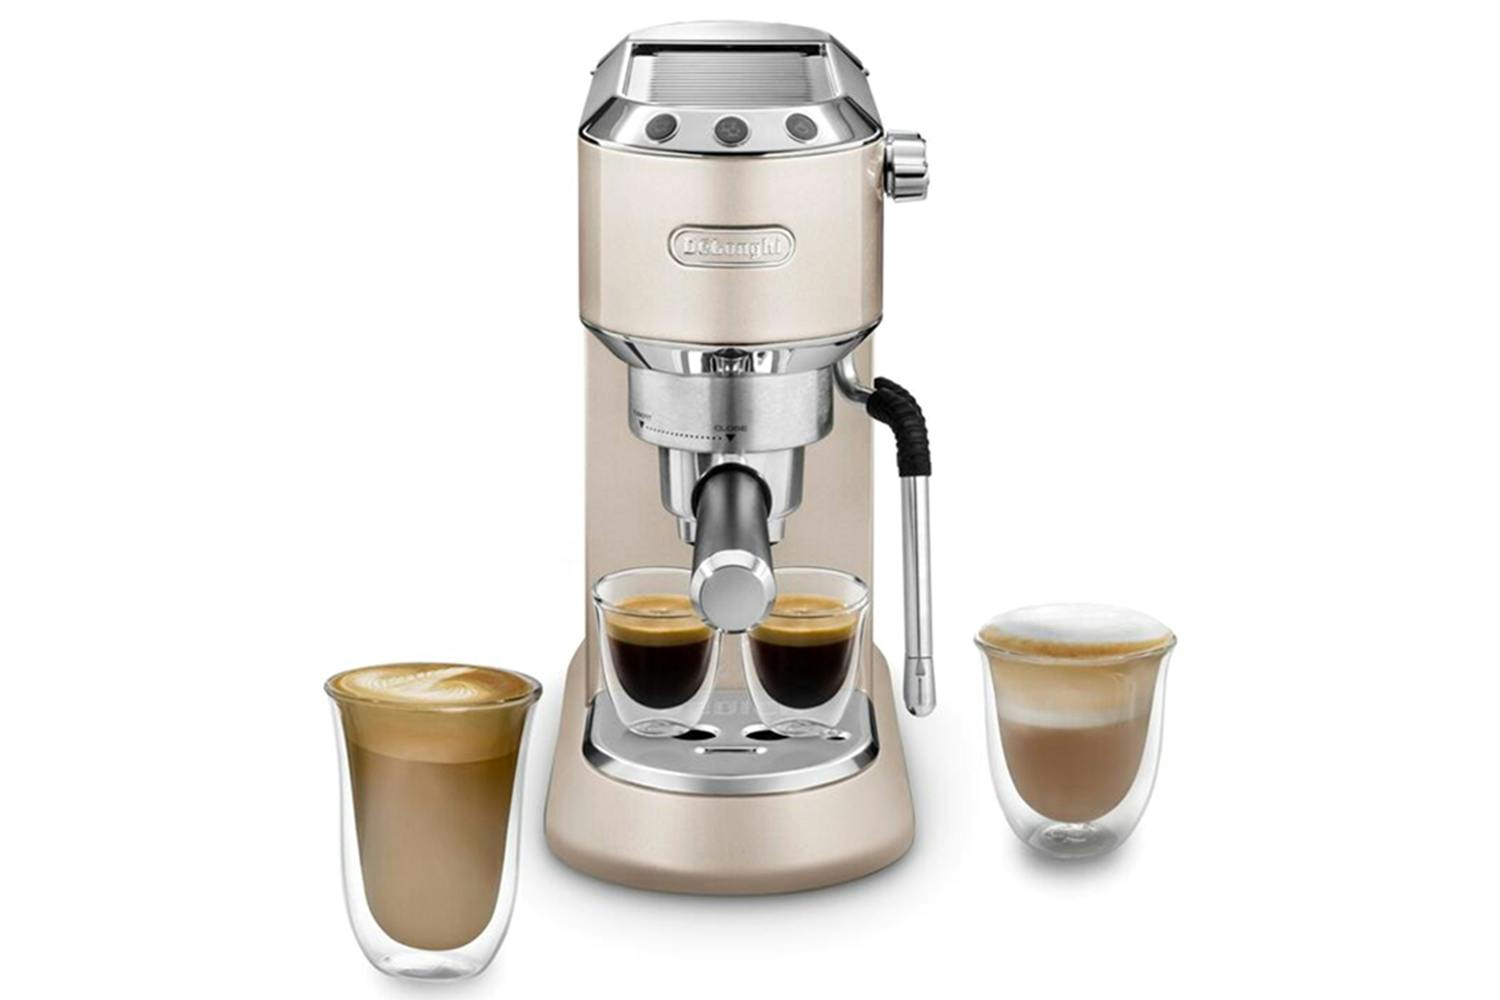 DeLonghi New Dedica Arte Manual Espresso Coffee Maker | EC885.BG | Beige Gold